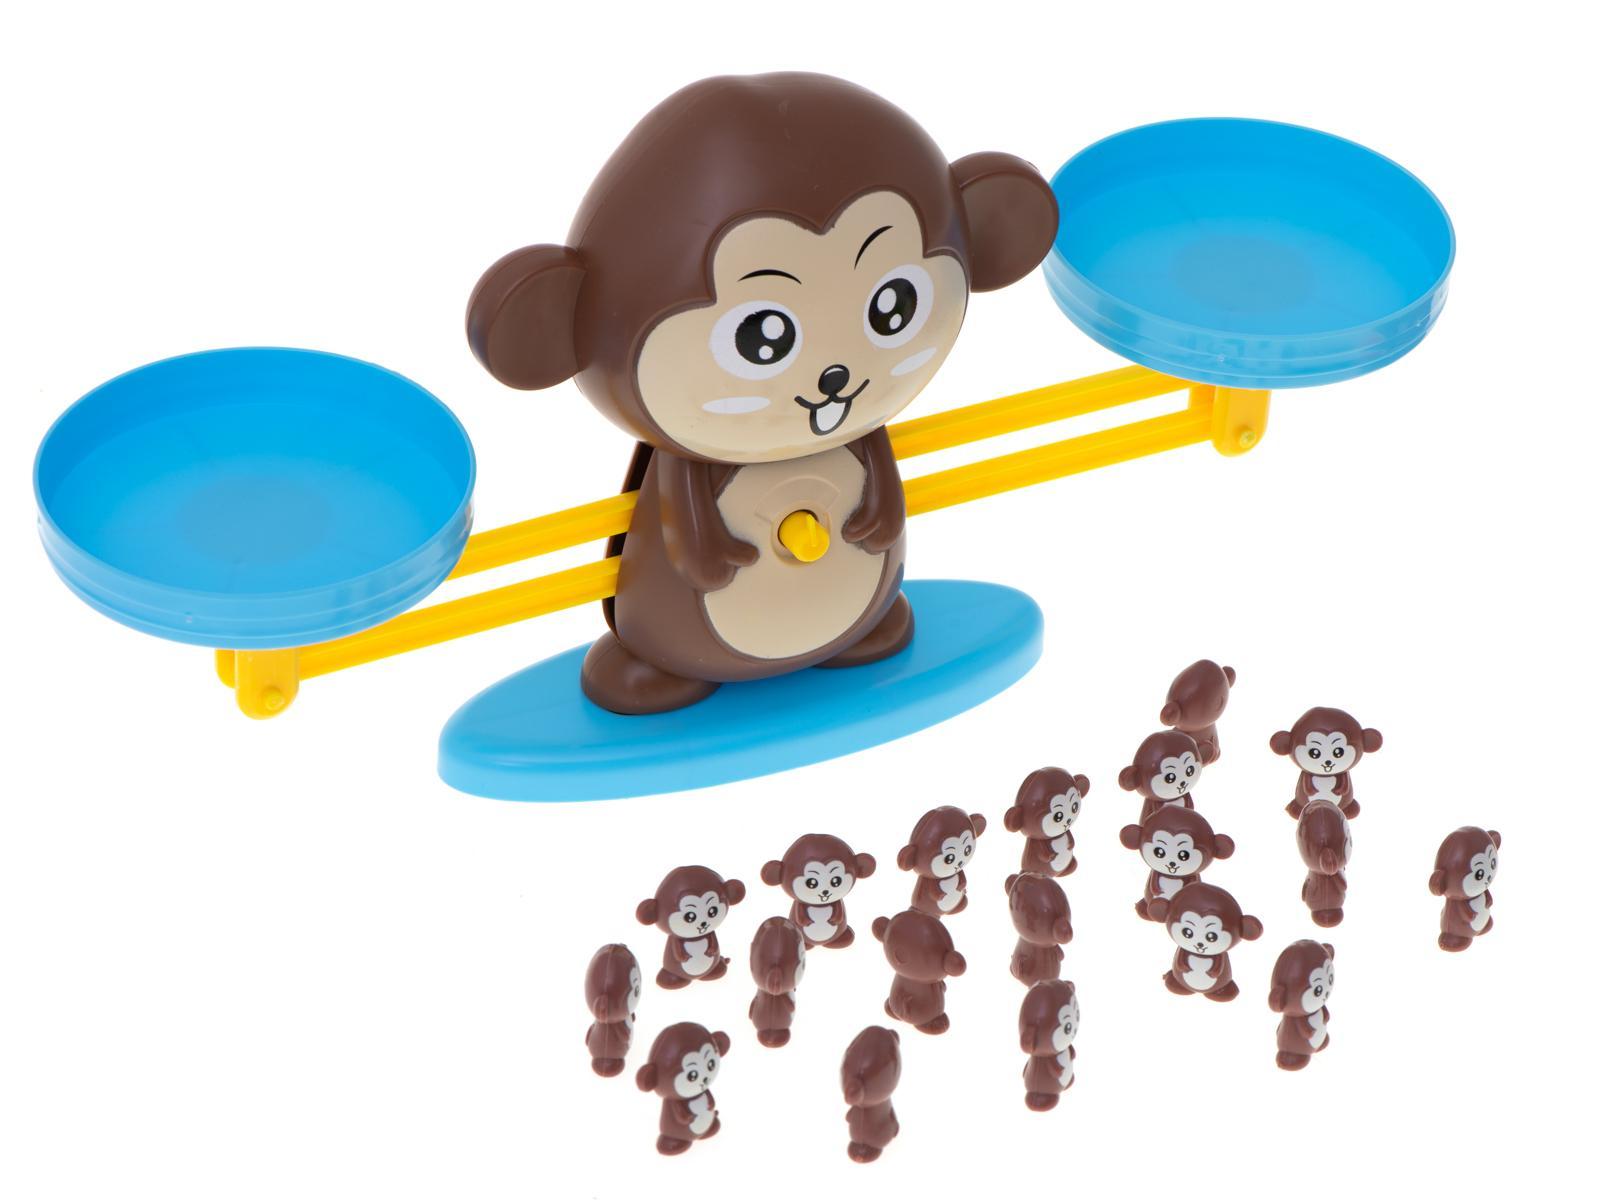 Waga szalkowa edukacyjna nauka liczenia małpka duża dla dzieci 34,5x9,5x8 cm 11 Full Screen